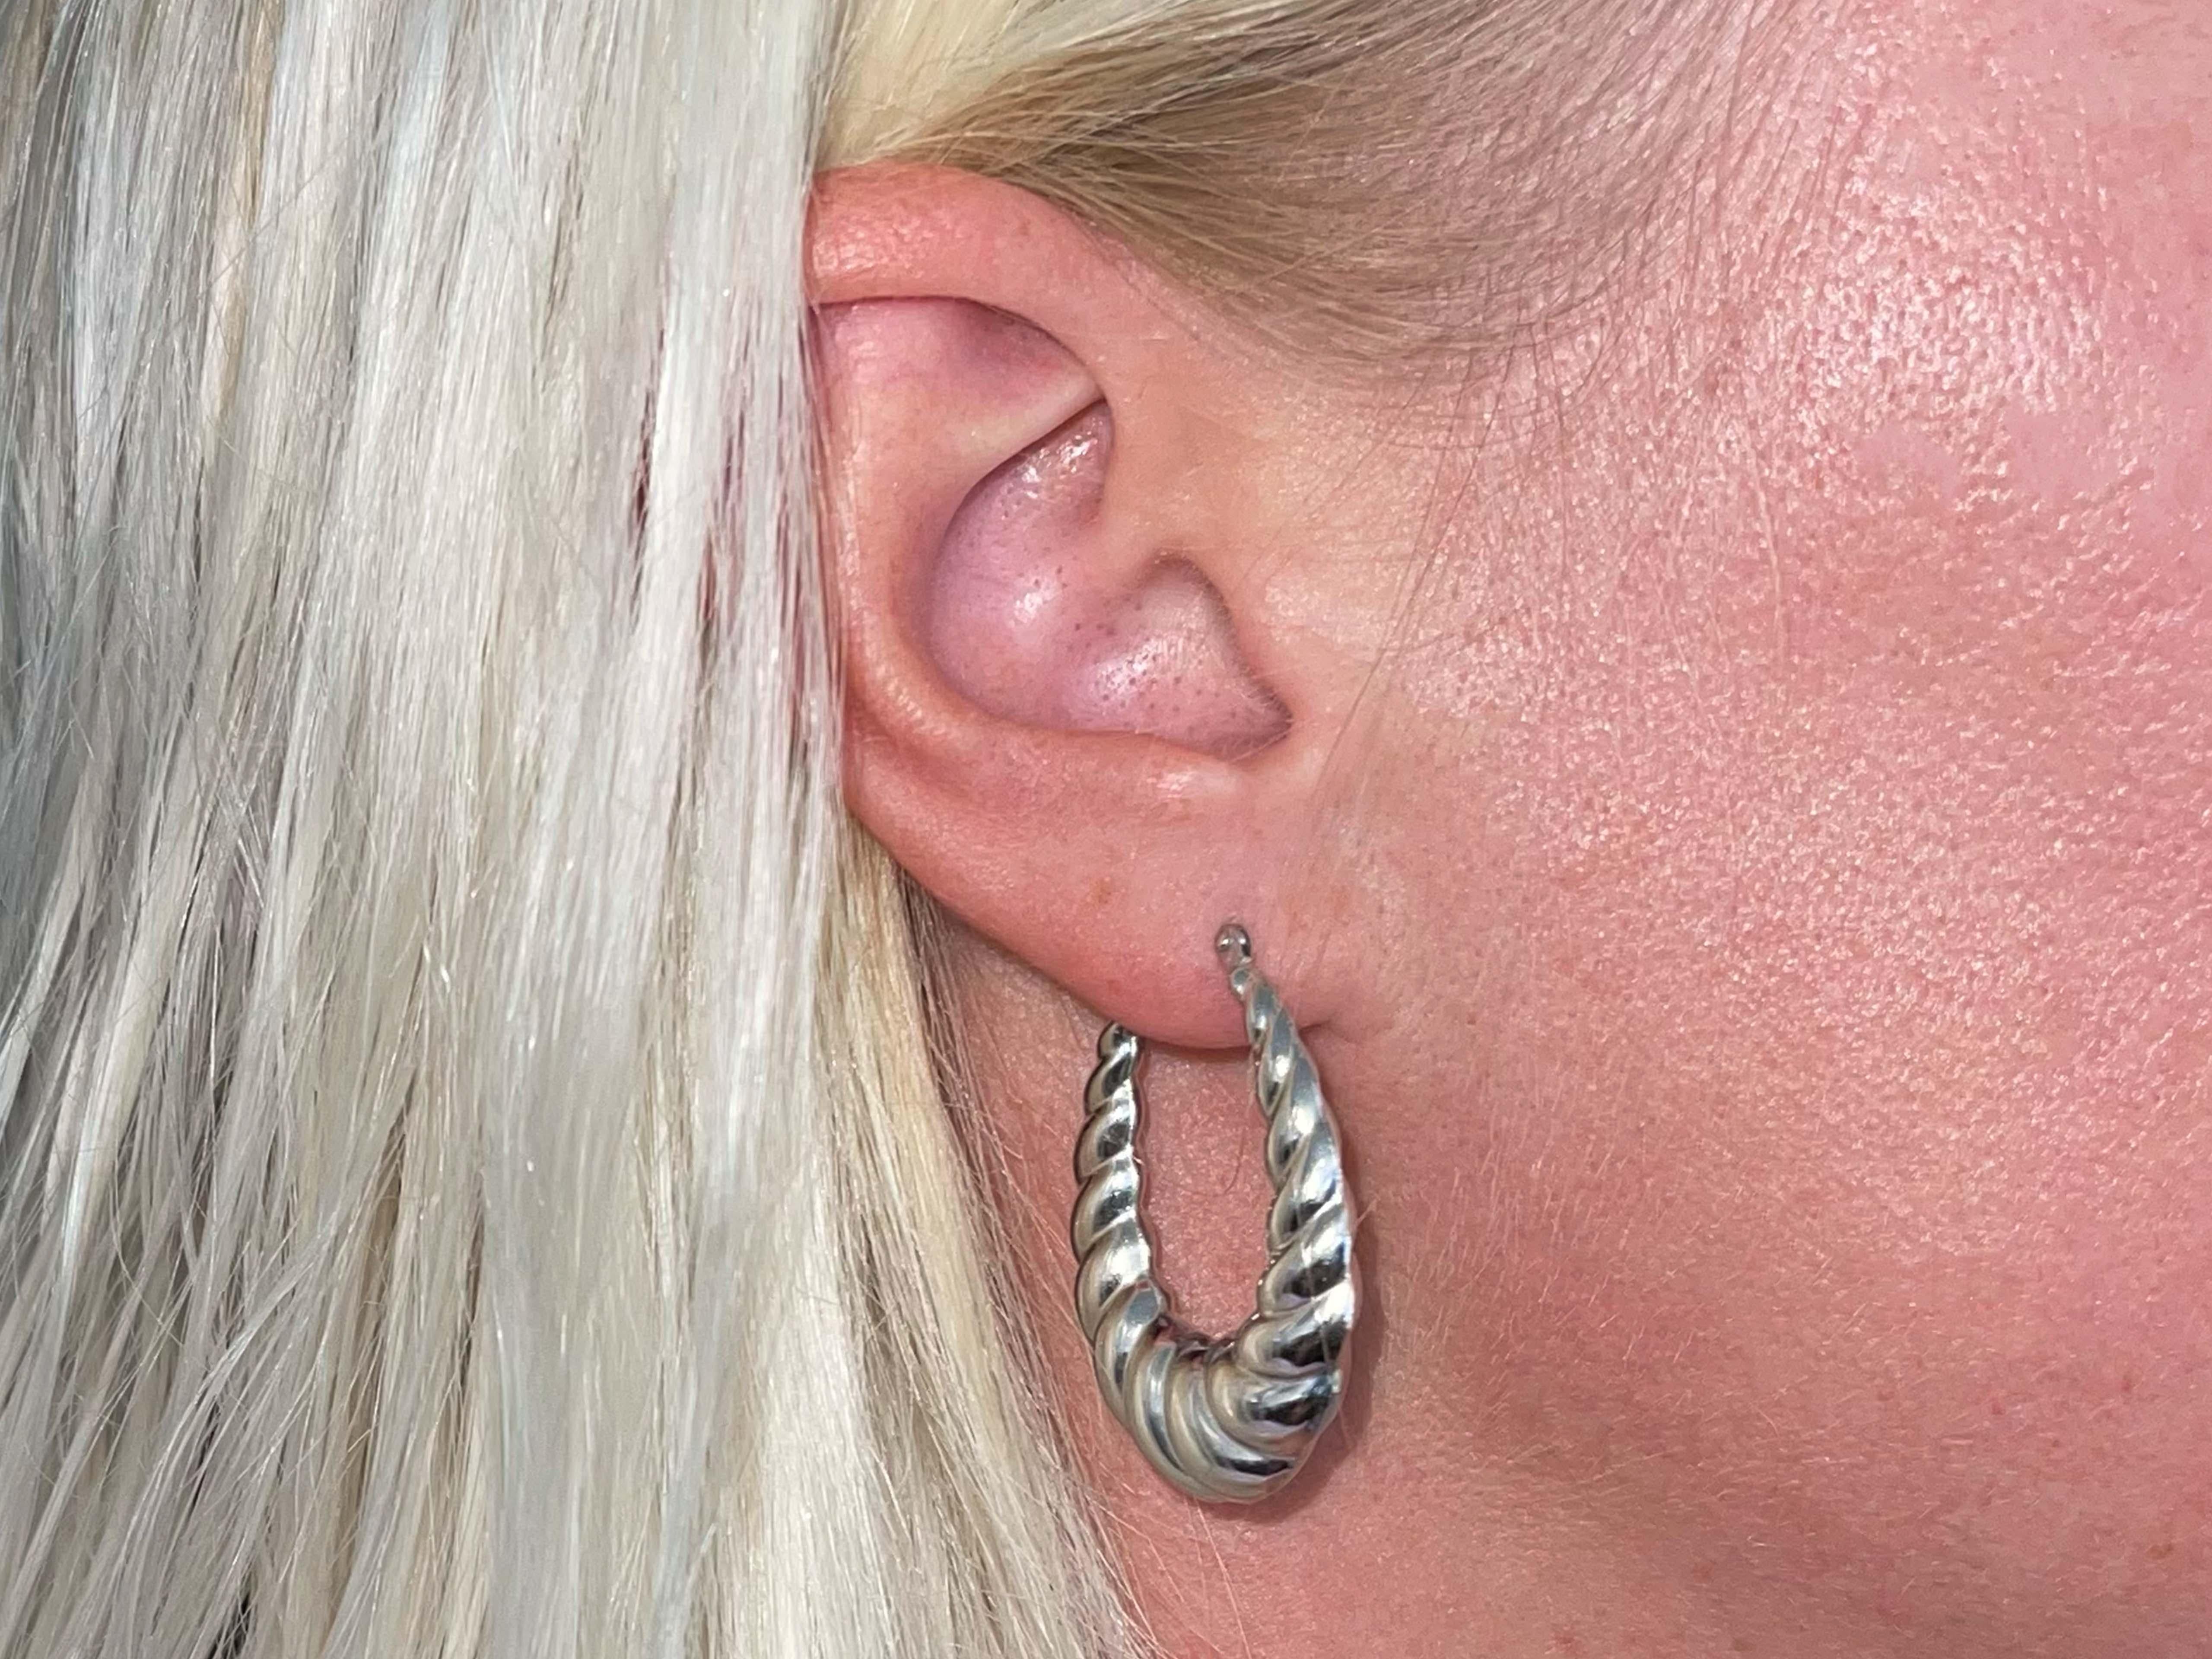 Earrings Specifications:

Metal: 18K White Gold

Total Weight: 6.2 Grams

Hoop Thickness: 6.6 mm

Hoop Diameter: 1